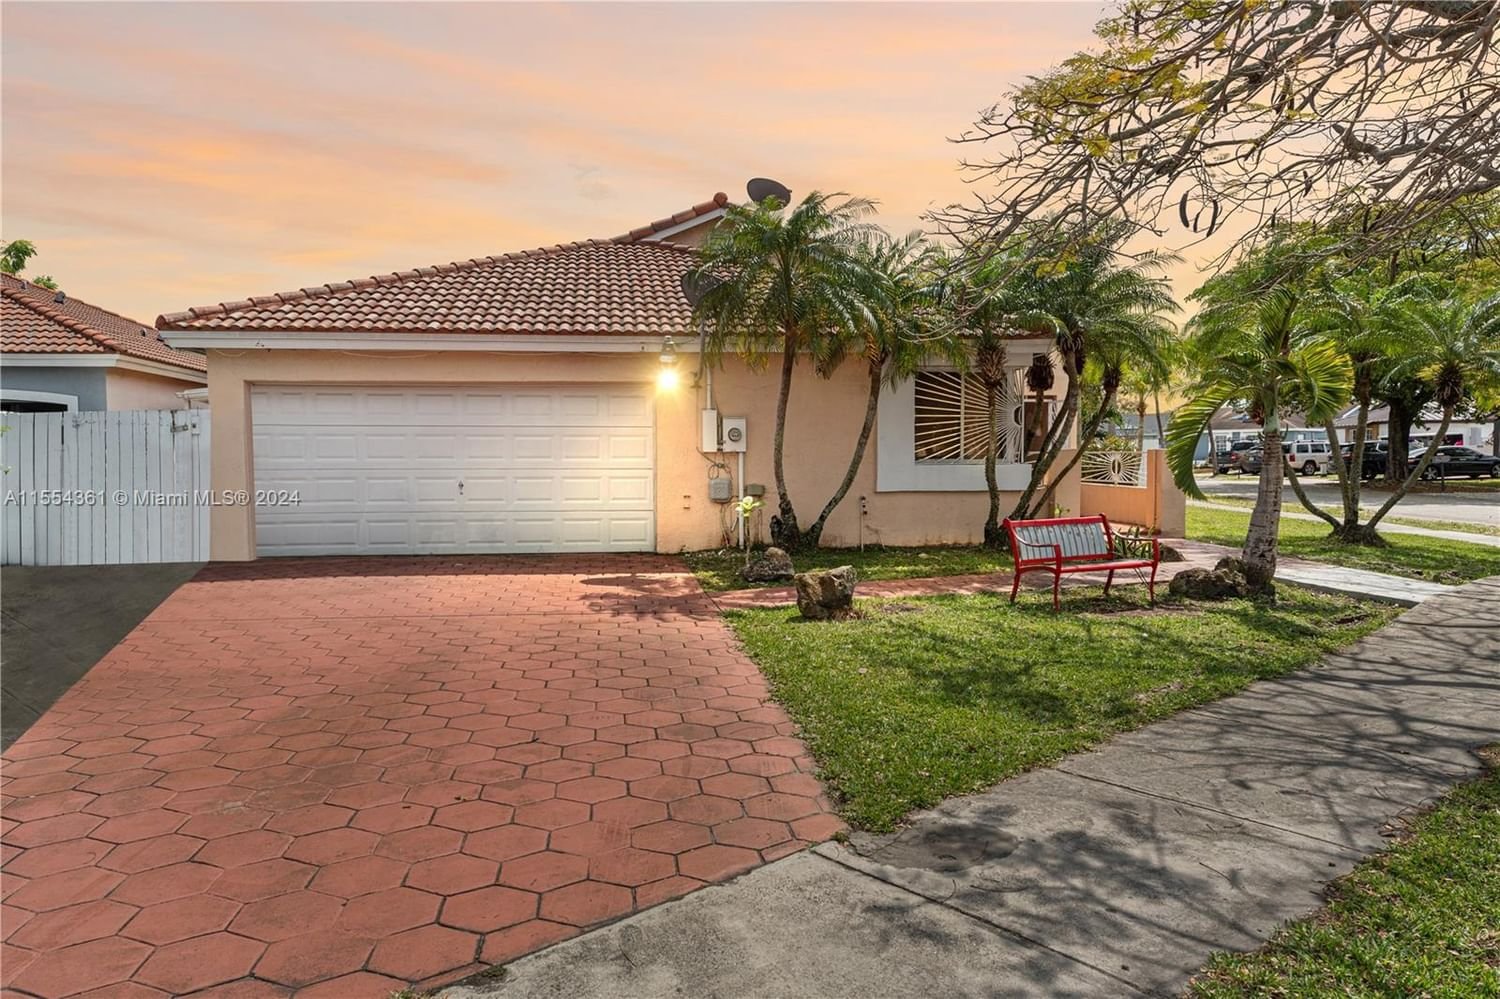 Real estate property located at 11450 185th St, Miami-Dade County, GRAPEVINE, Miami, FL